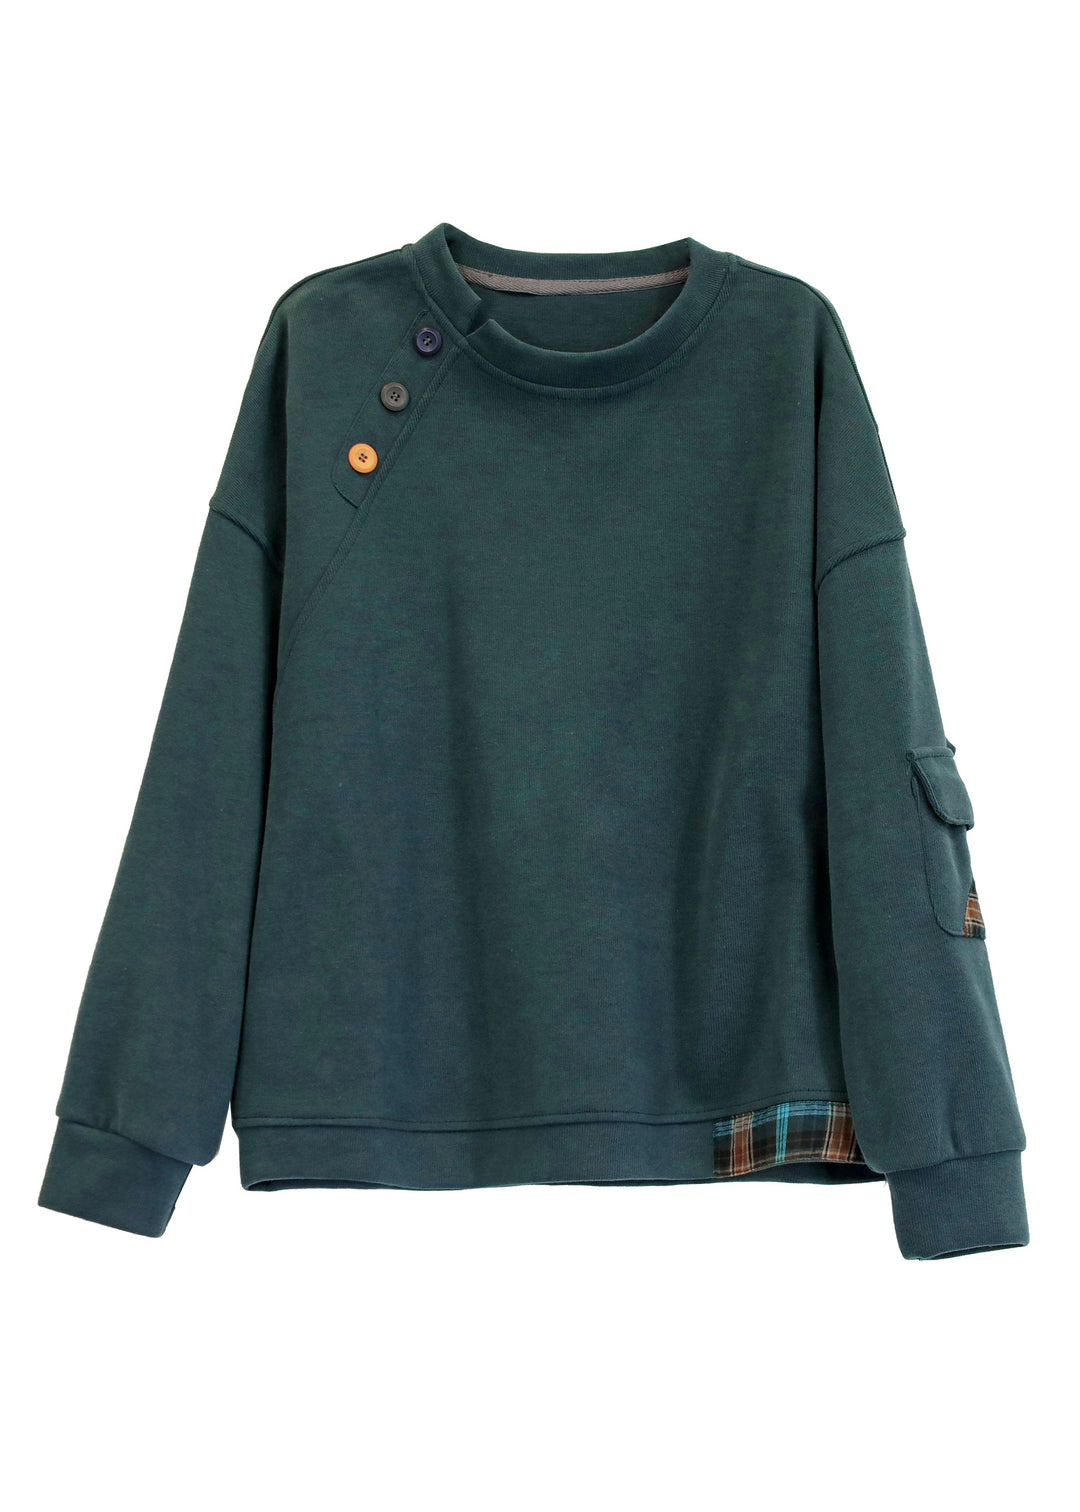 Modern Grass Green O-Neck Pockets Patchwork Button Cotton Sweatshirts Long Sleeve